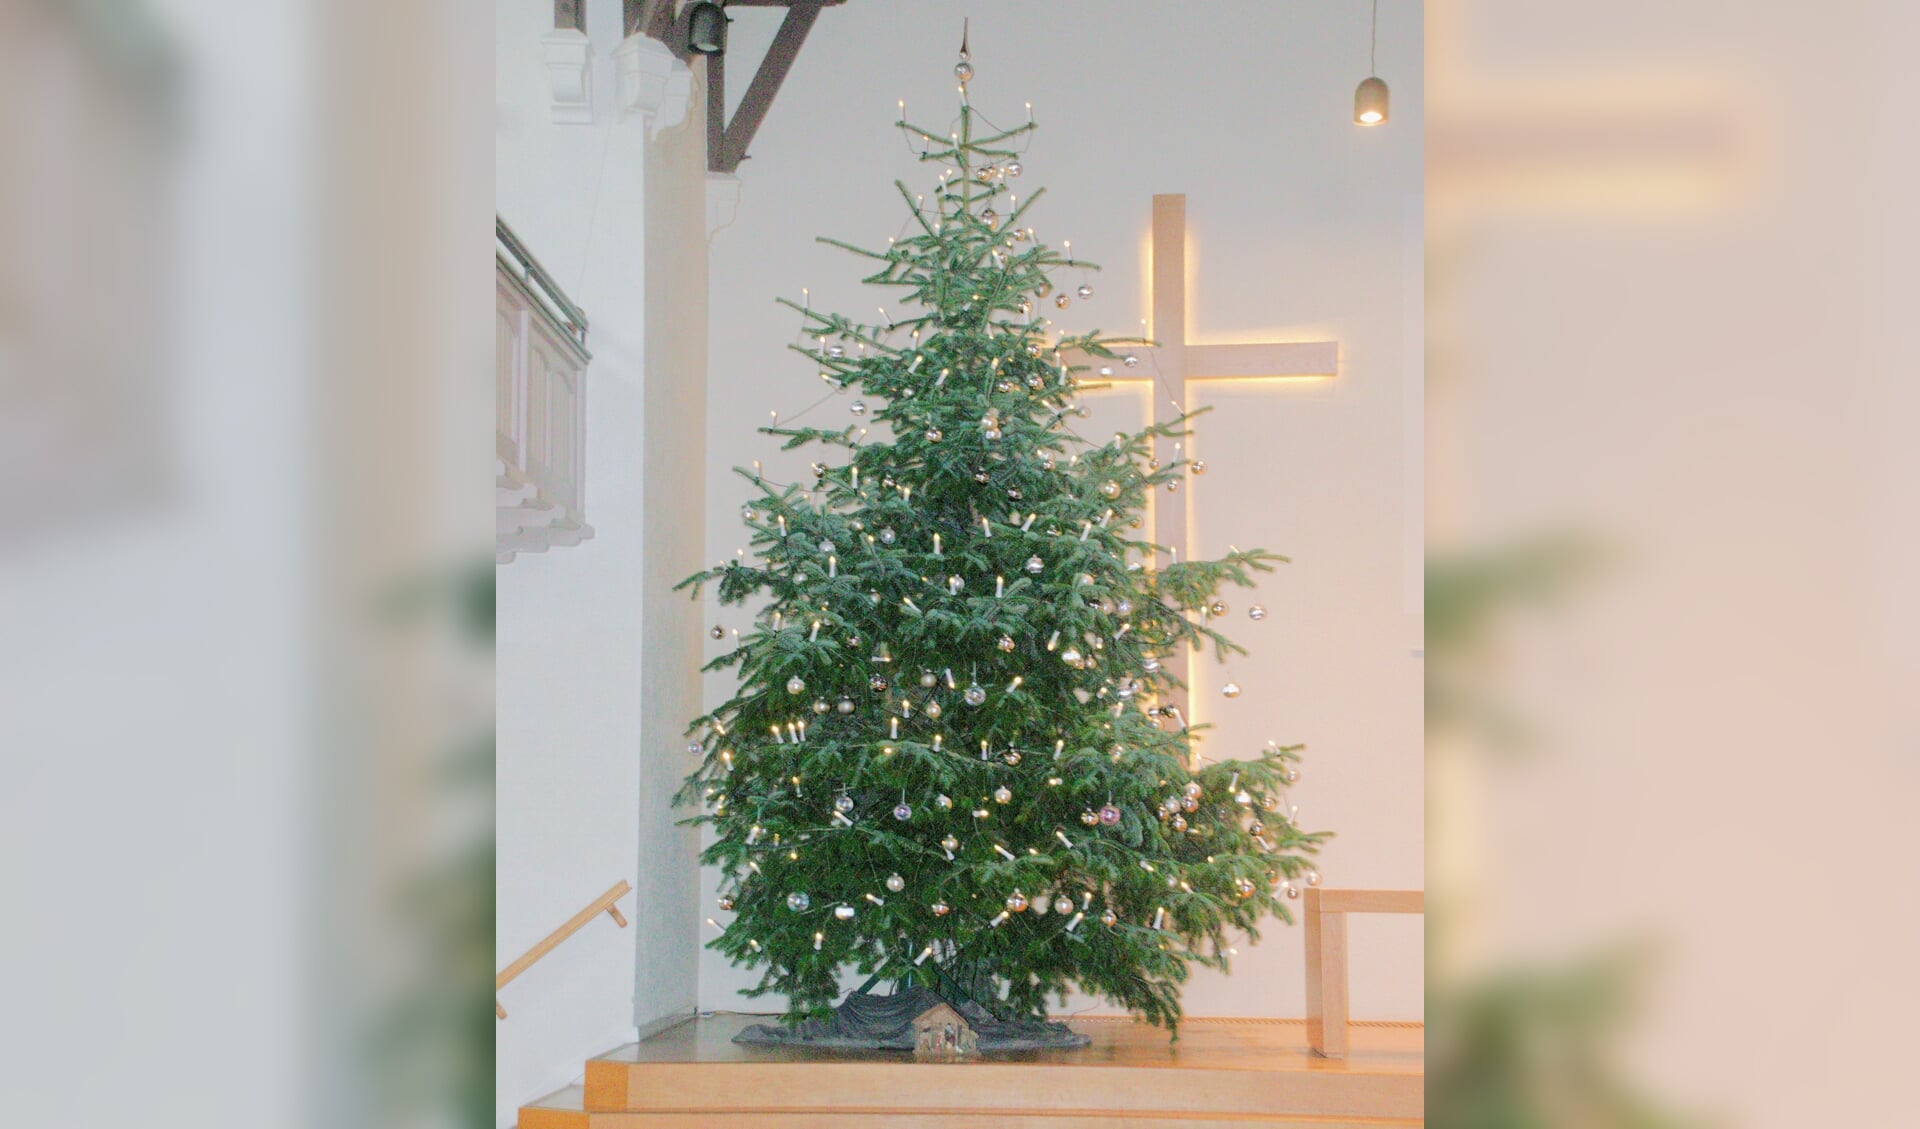 De kerstboom in de Zonnebrinkkerk. Foto: Ans ter Horst